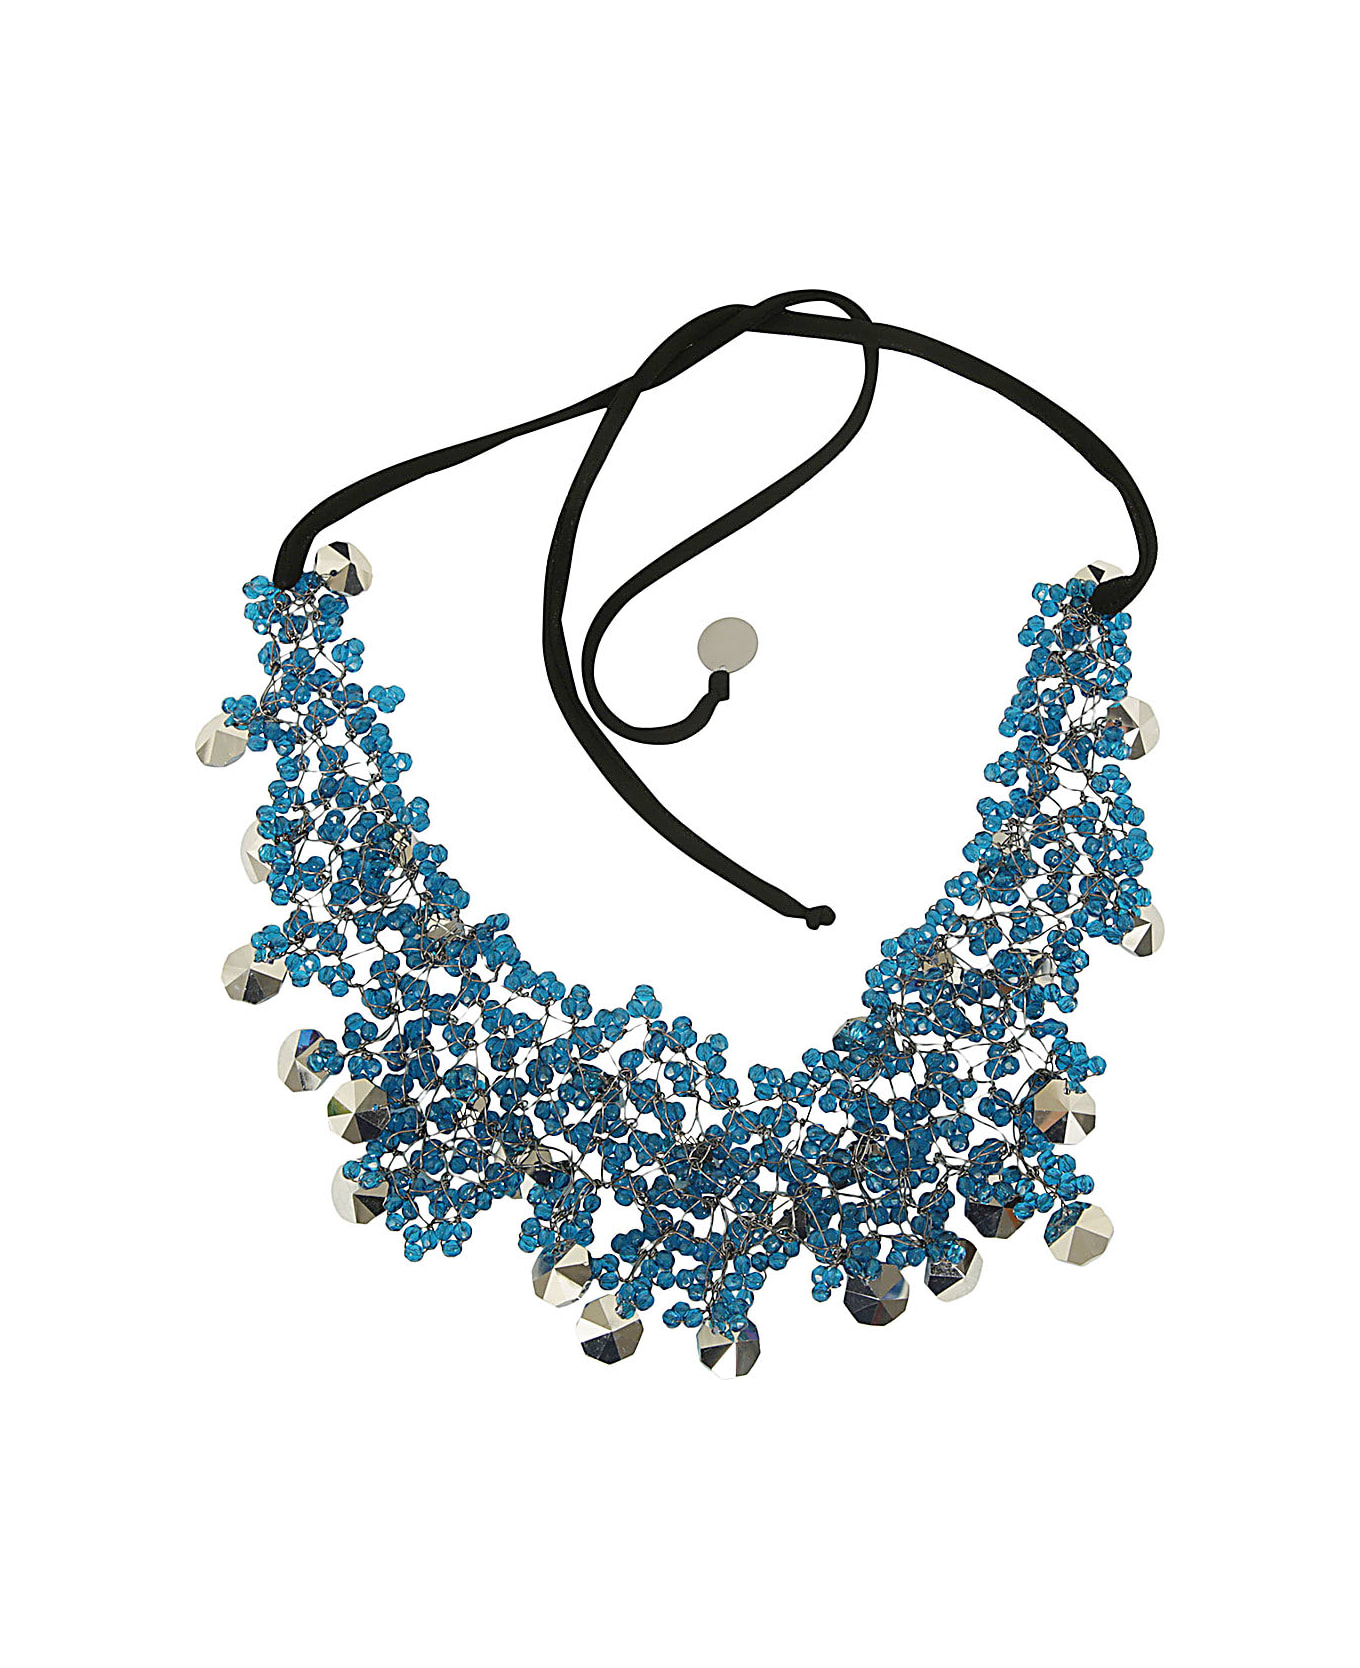 Maria Calderara Crystals Necklace - B Blue ネックレス